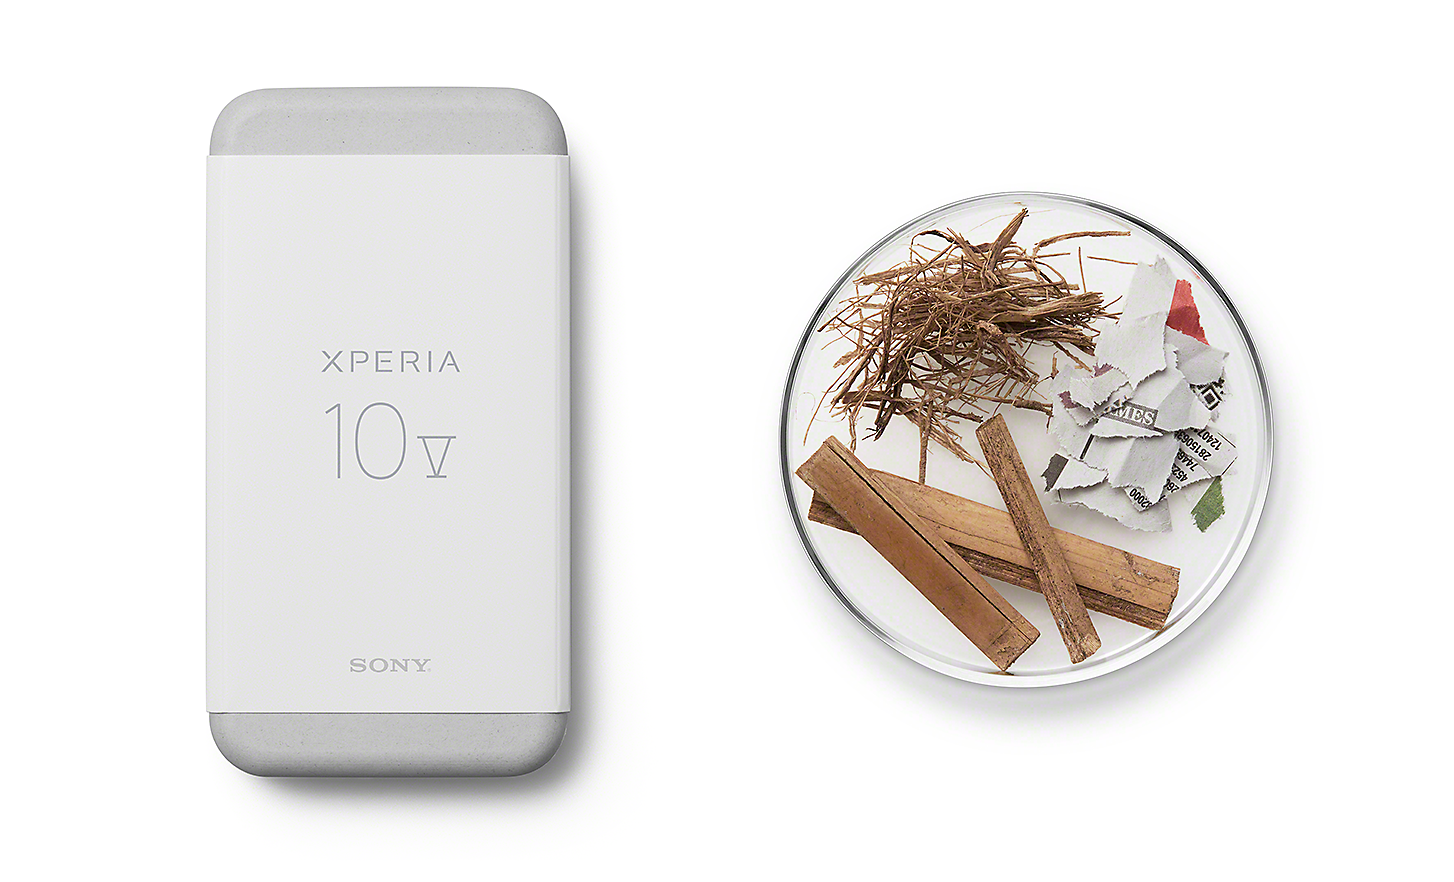 Xperia 10 V 的包裝，旁邊放有一些永續材料